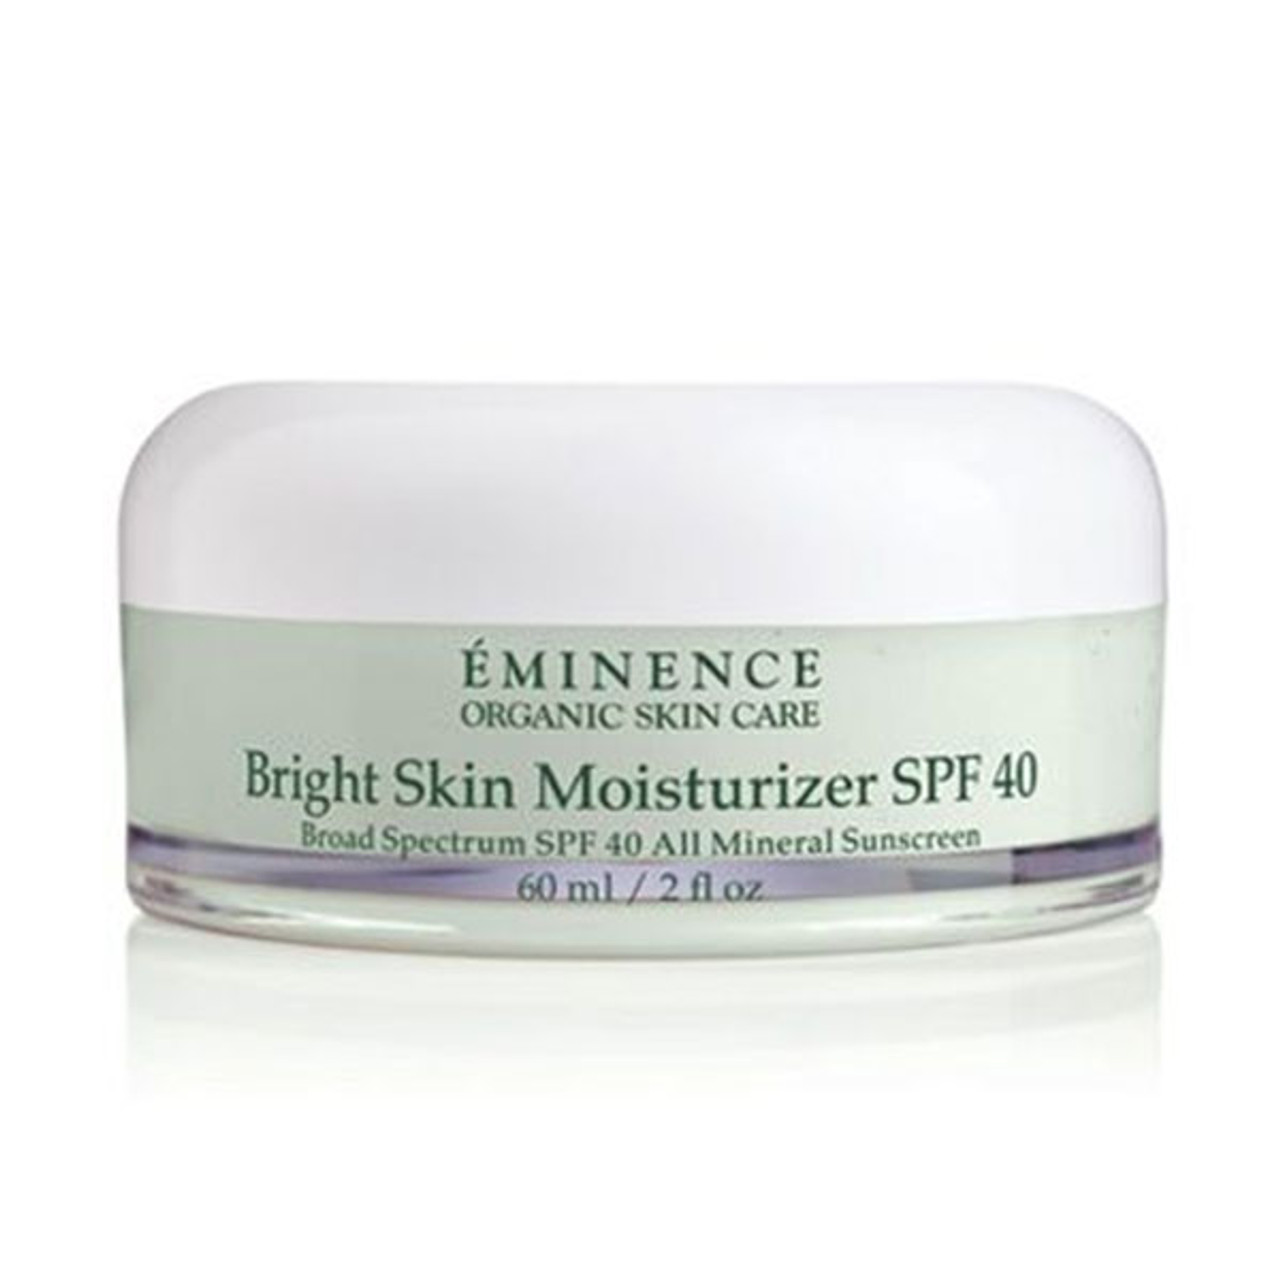 Eminence Bright Skin Moisturizer SPF 40 | Brightening Treatment